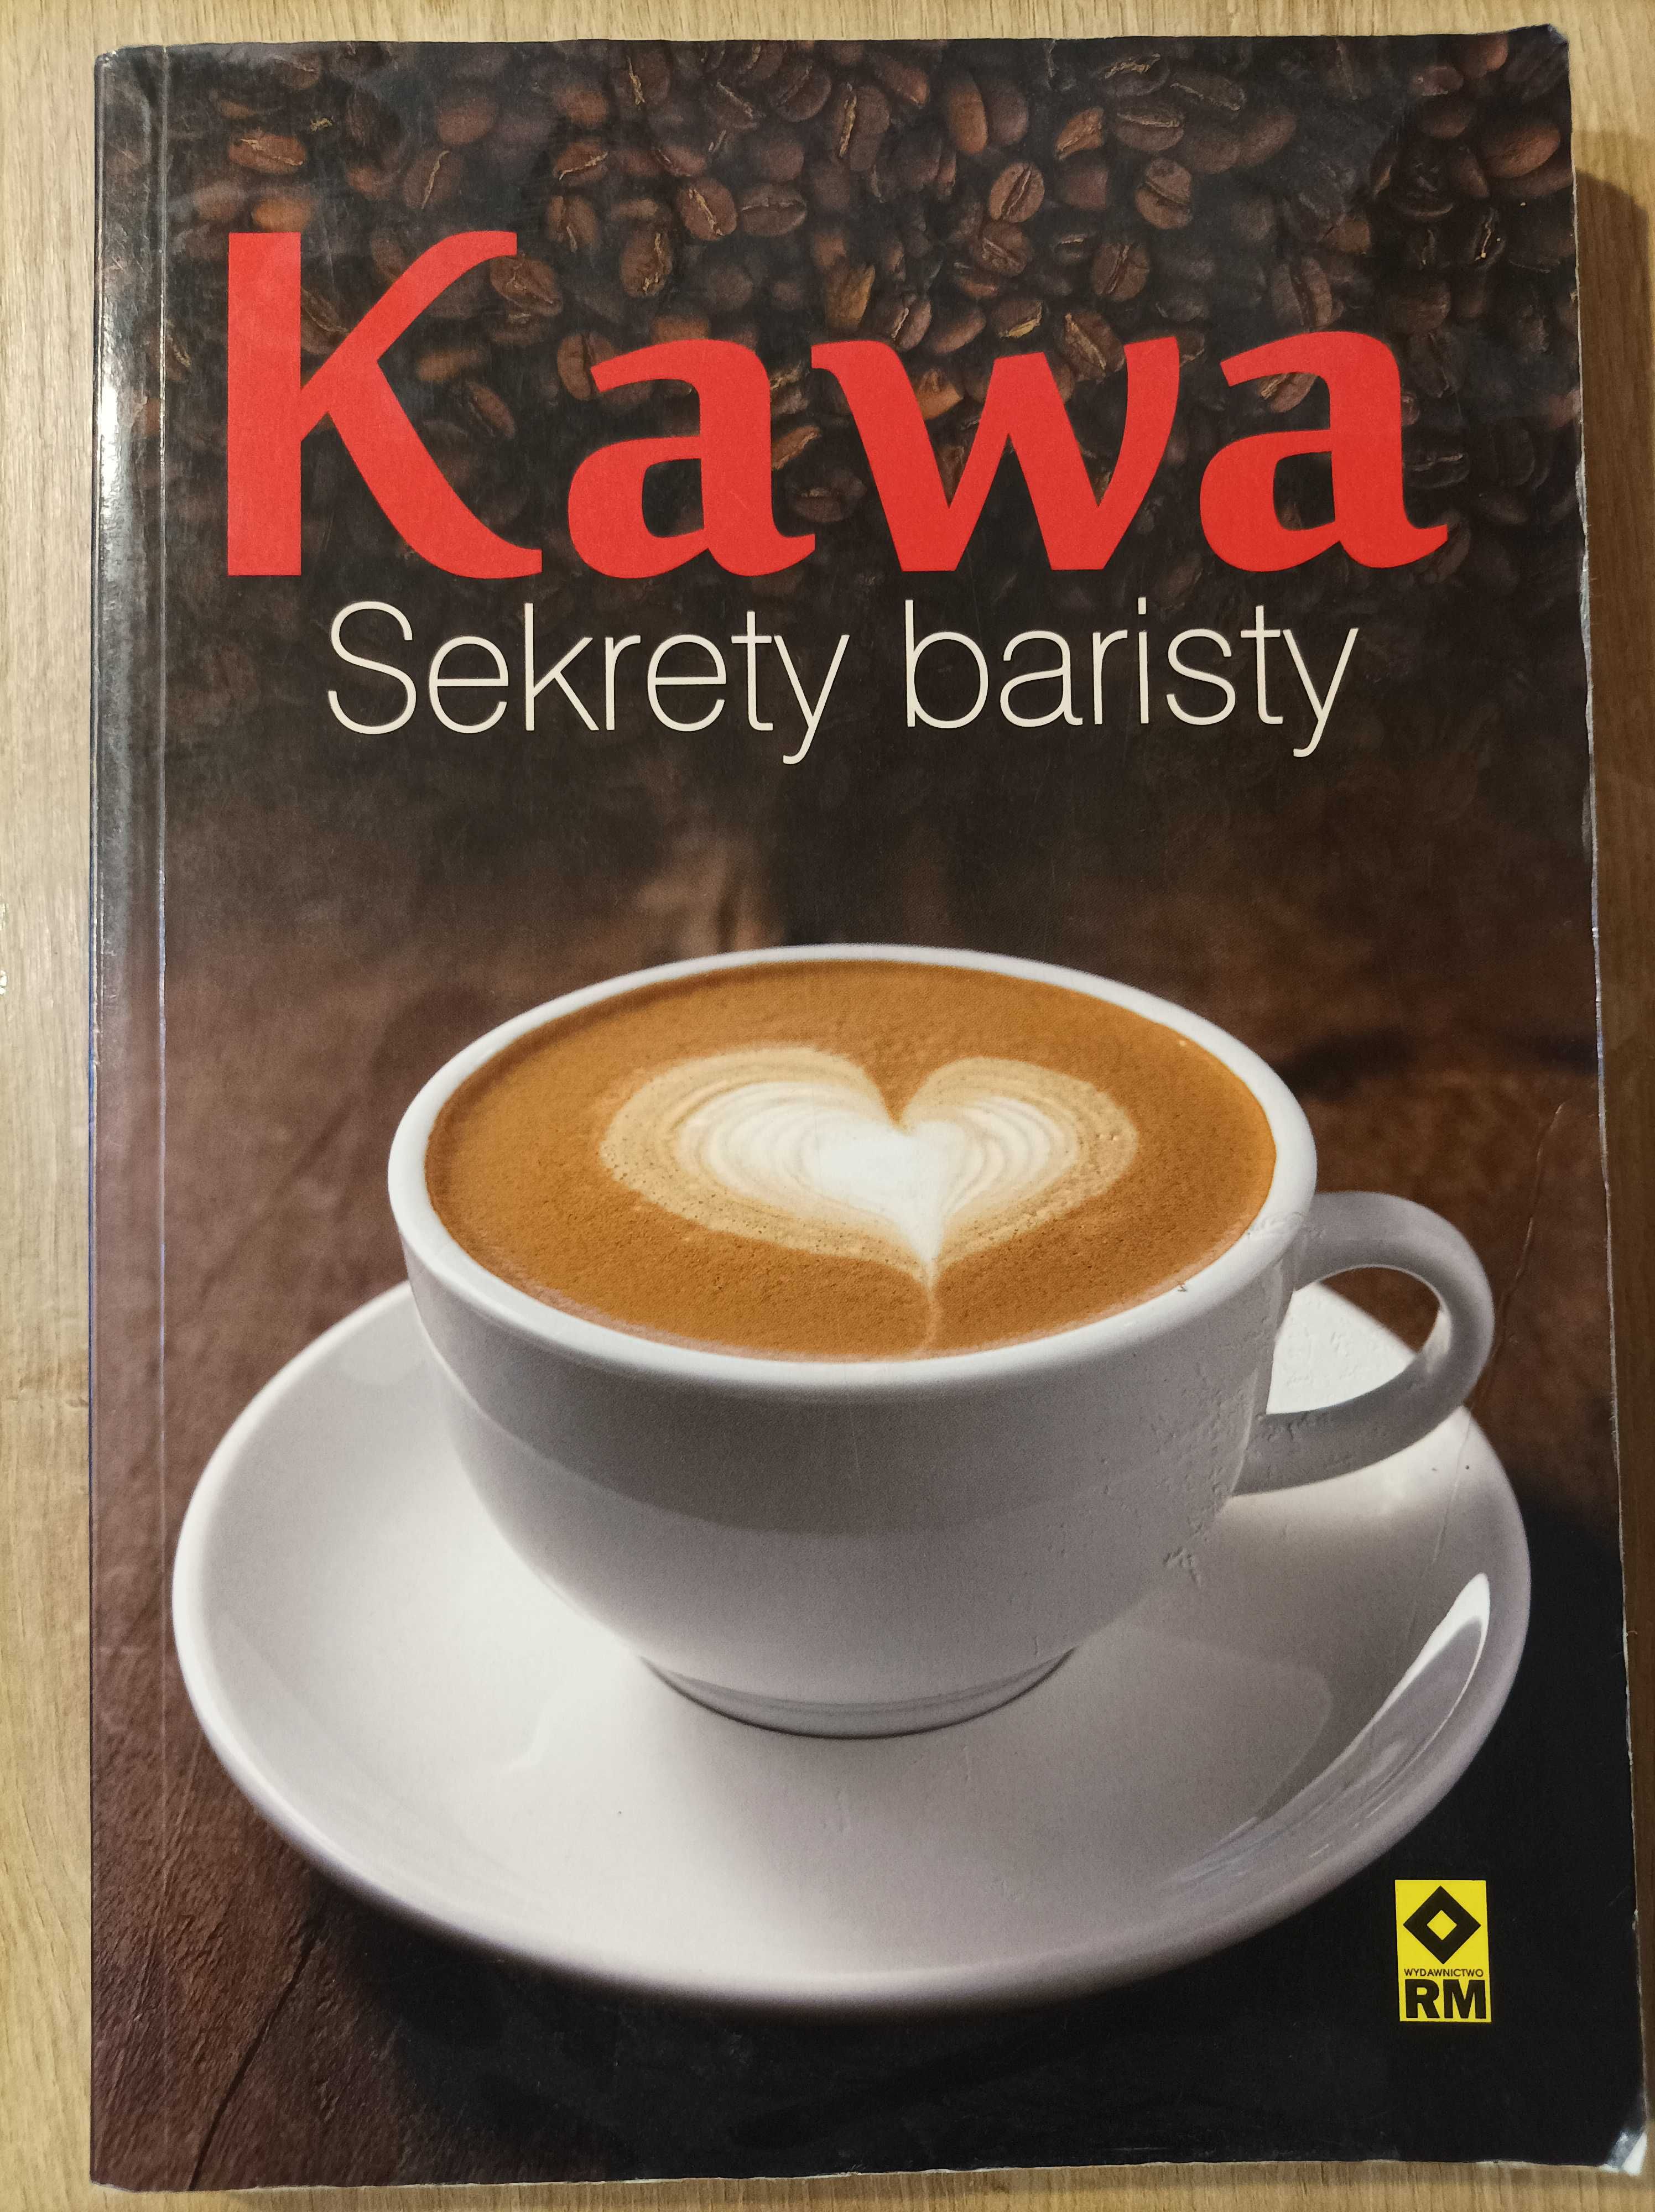 Kawa sekrety baristy książka jak nowa